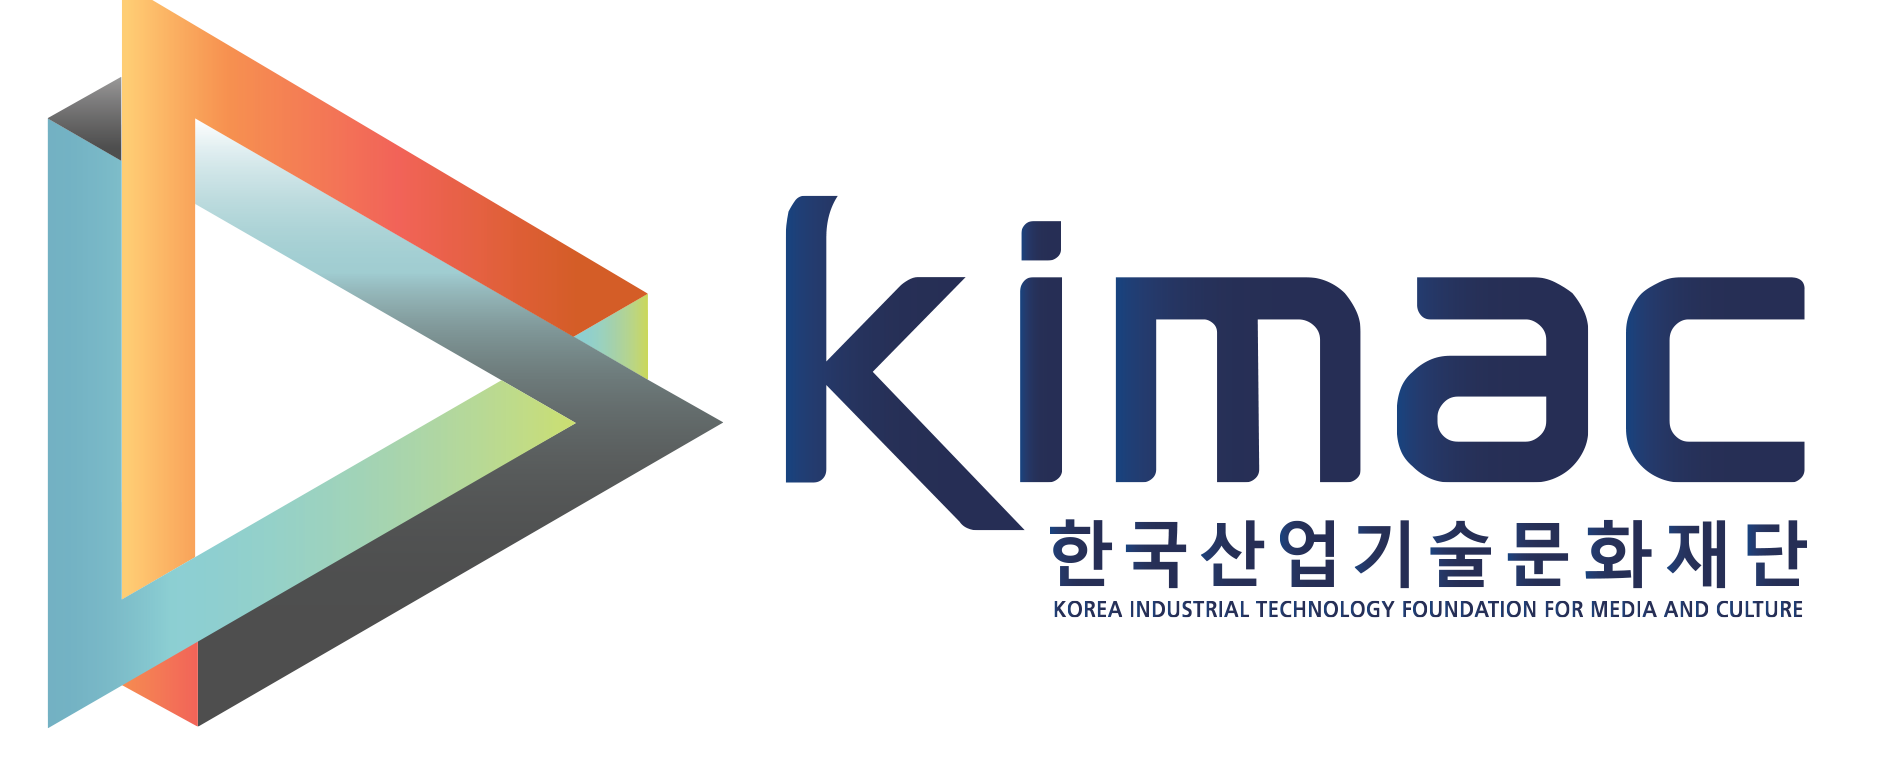 한국산업기술문화재단(재)의 기업로고